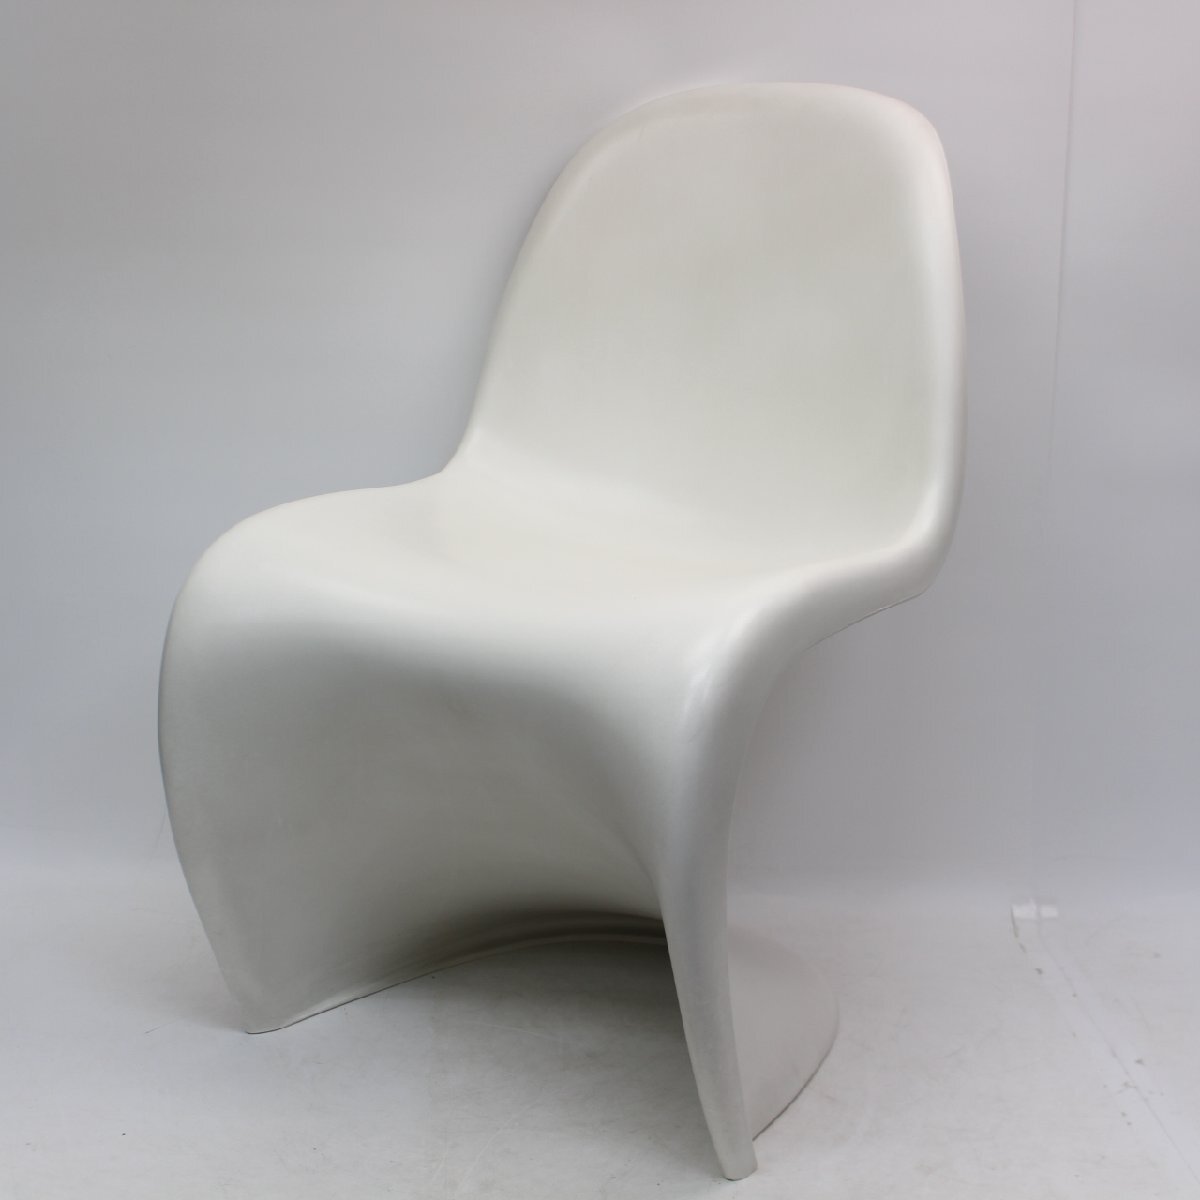 071)ヴィトラ vitra Panton Chair パントンチェア ホワイト 椅子 白の画像1